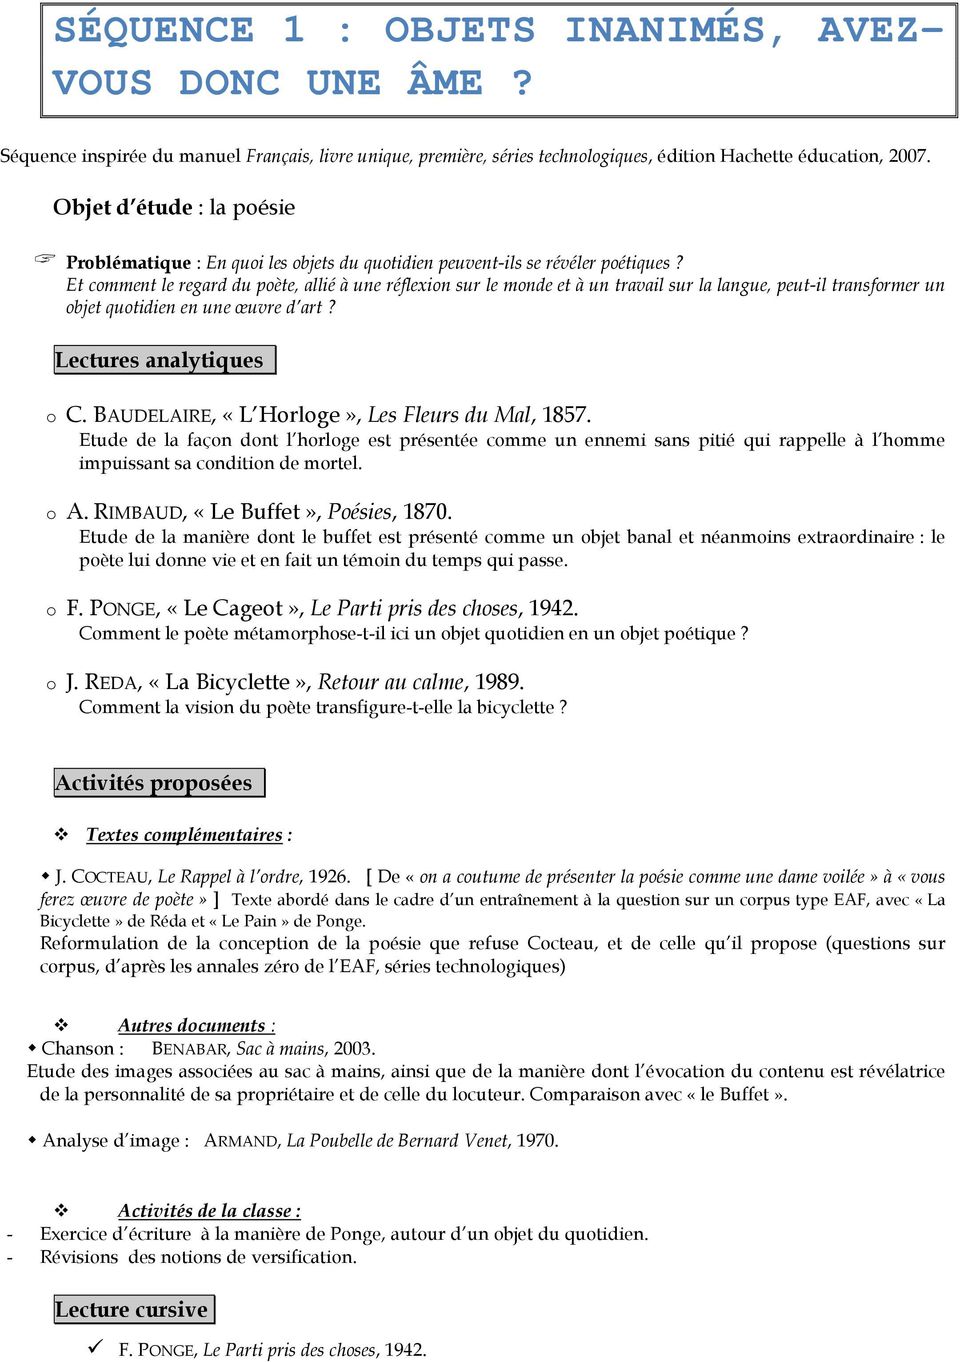 Lecture Cursive Le Parti Pris Des Choses SÉQUENCE 1 : OBJETS INANIMÉS, AVEZ- VOUS DONC UNE ÂME? - PDF Téléchargement  Gratuit